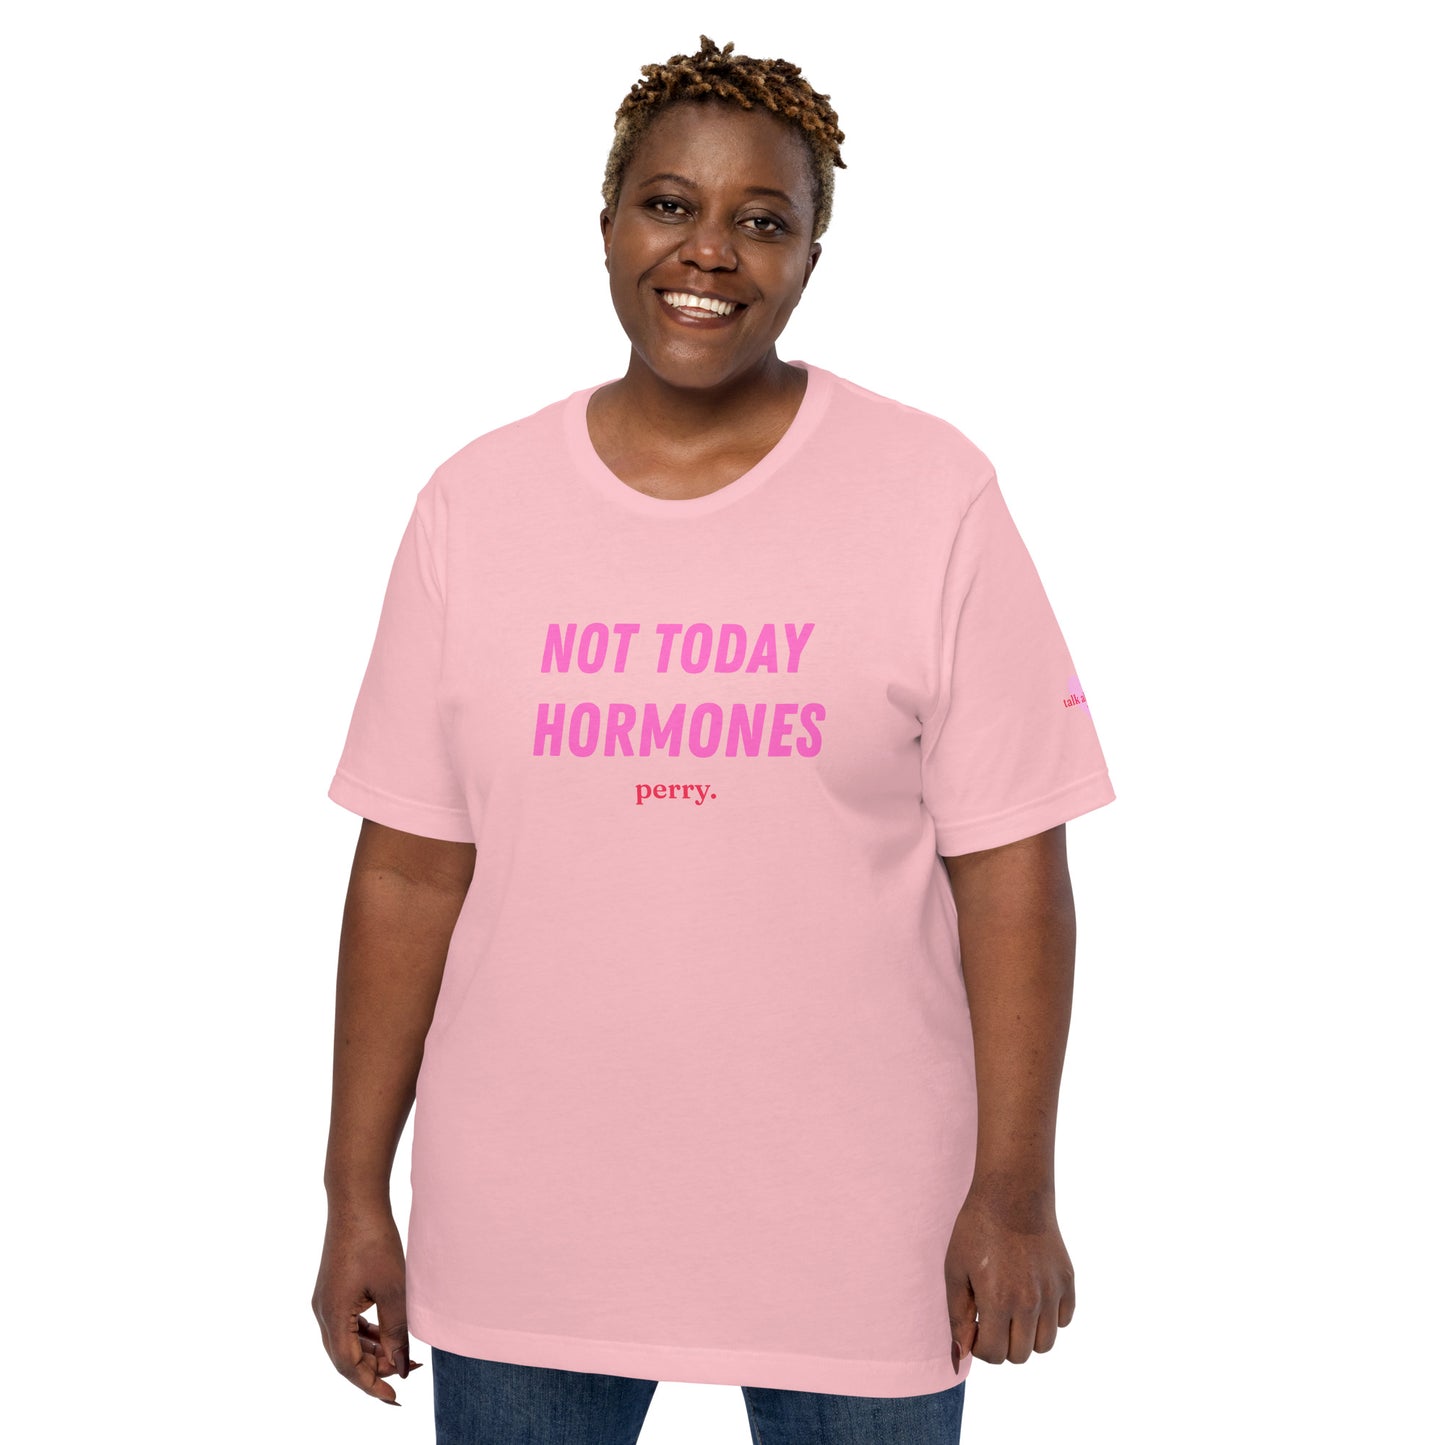 Not Today Hormones - T-Shirt